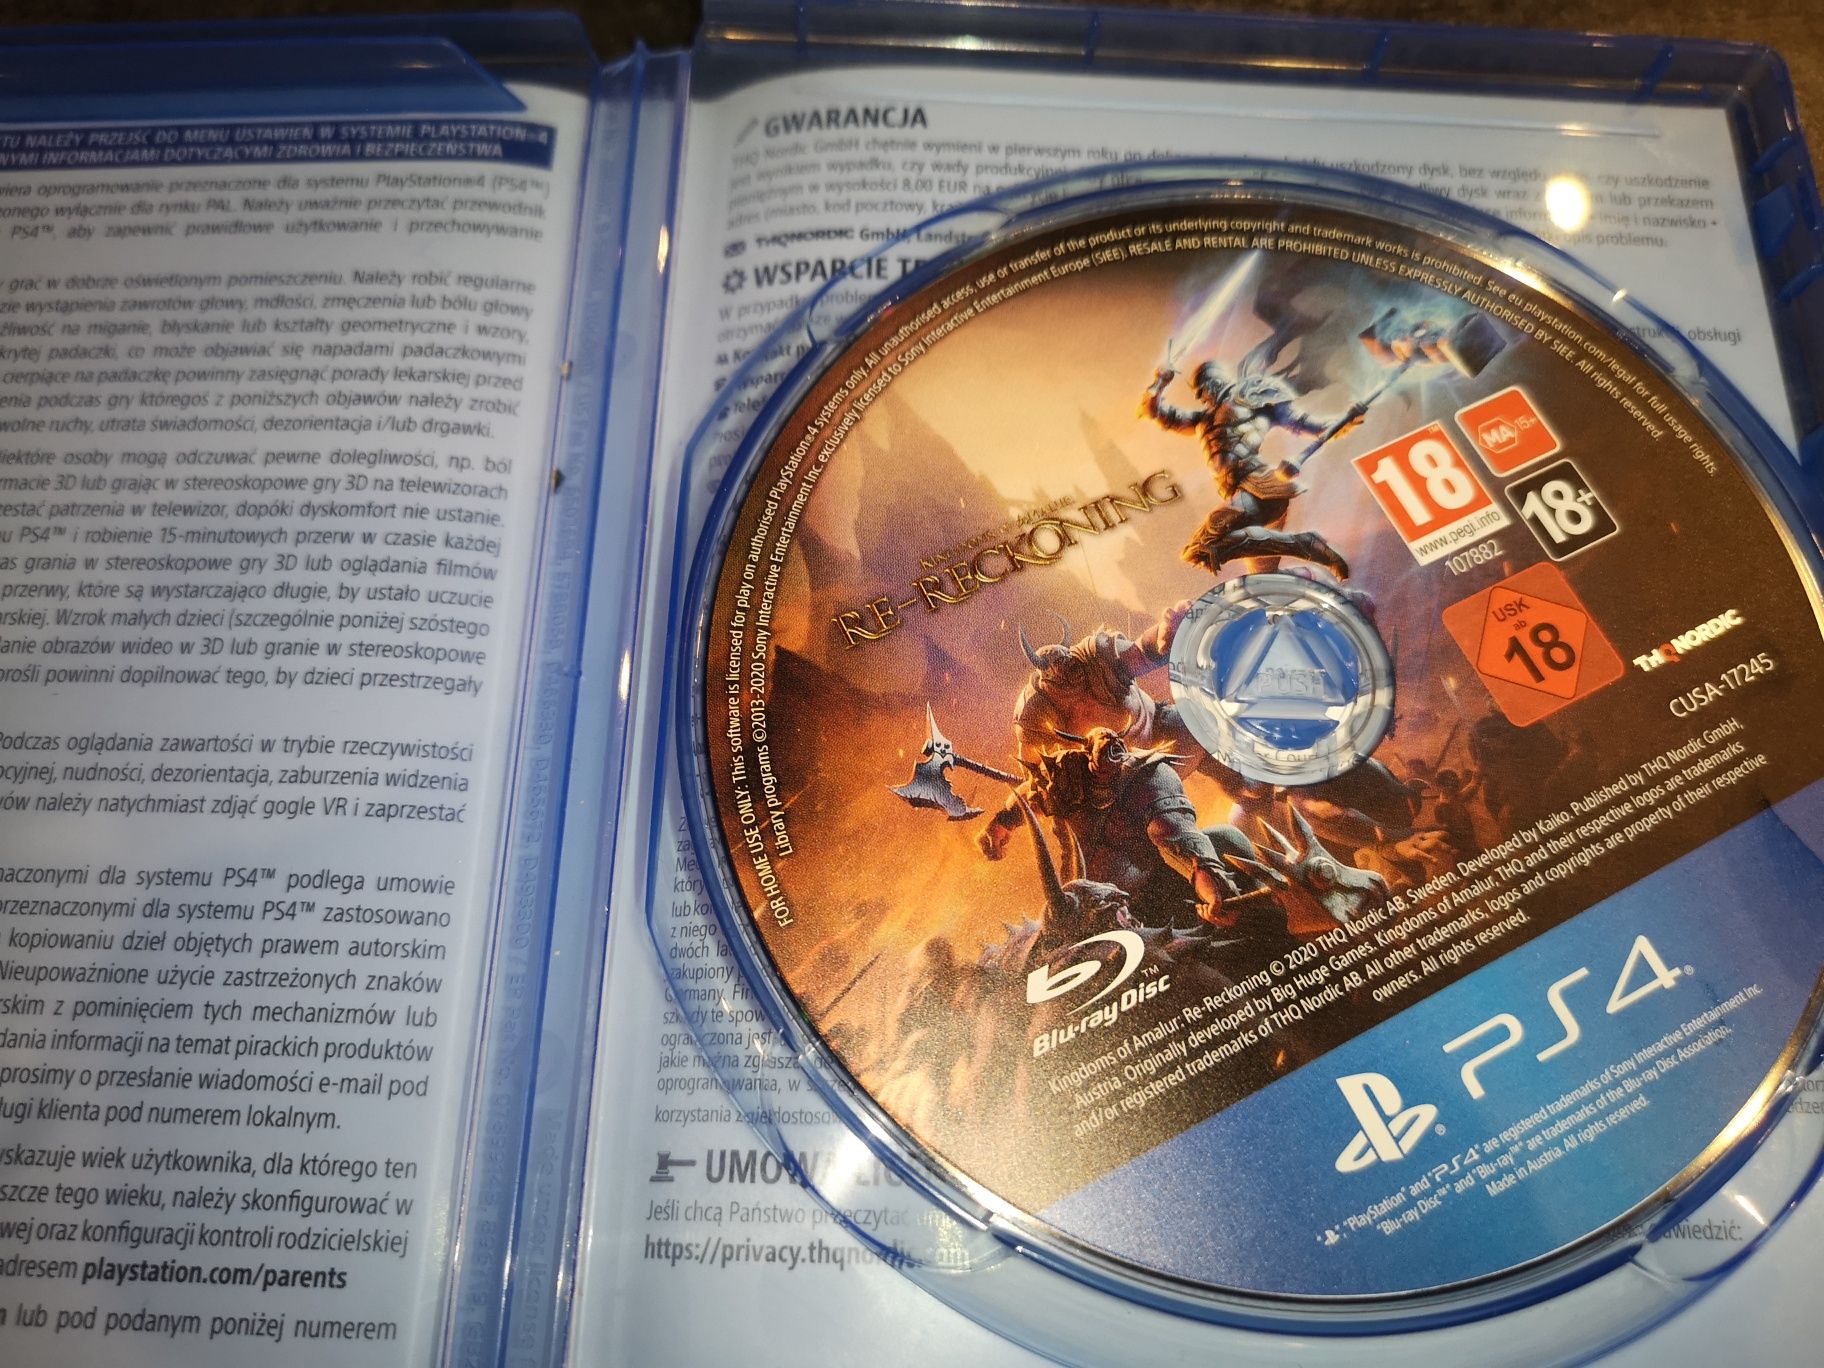 Re-Reckoning PS4 gra (możliwość wymiany) kioskzgrami Ursus